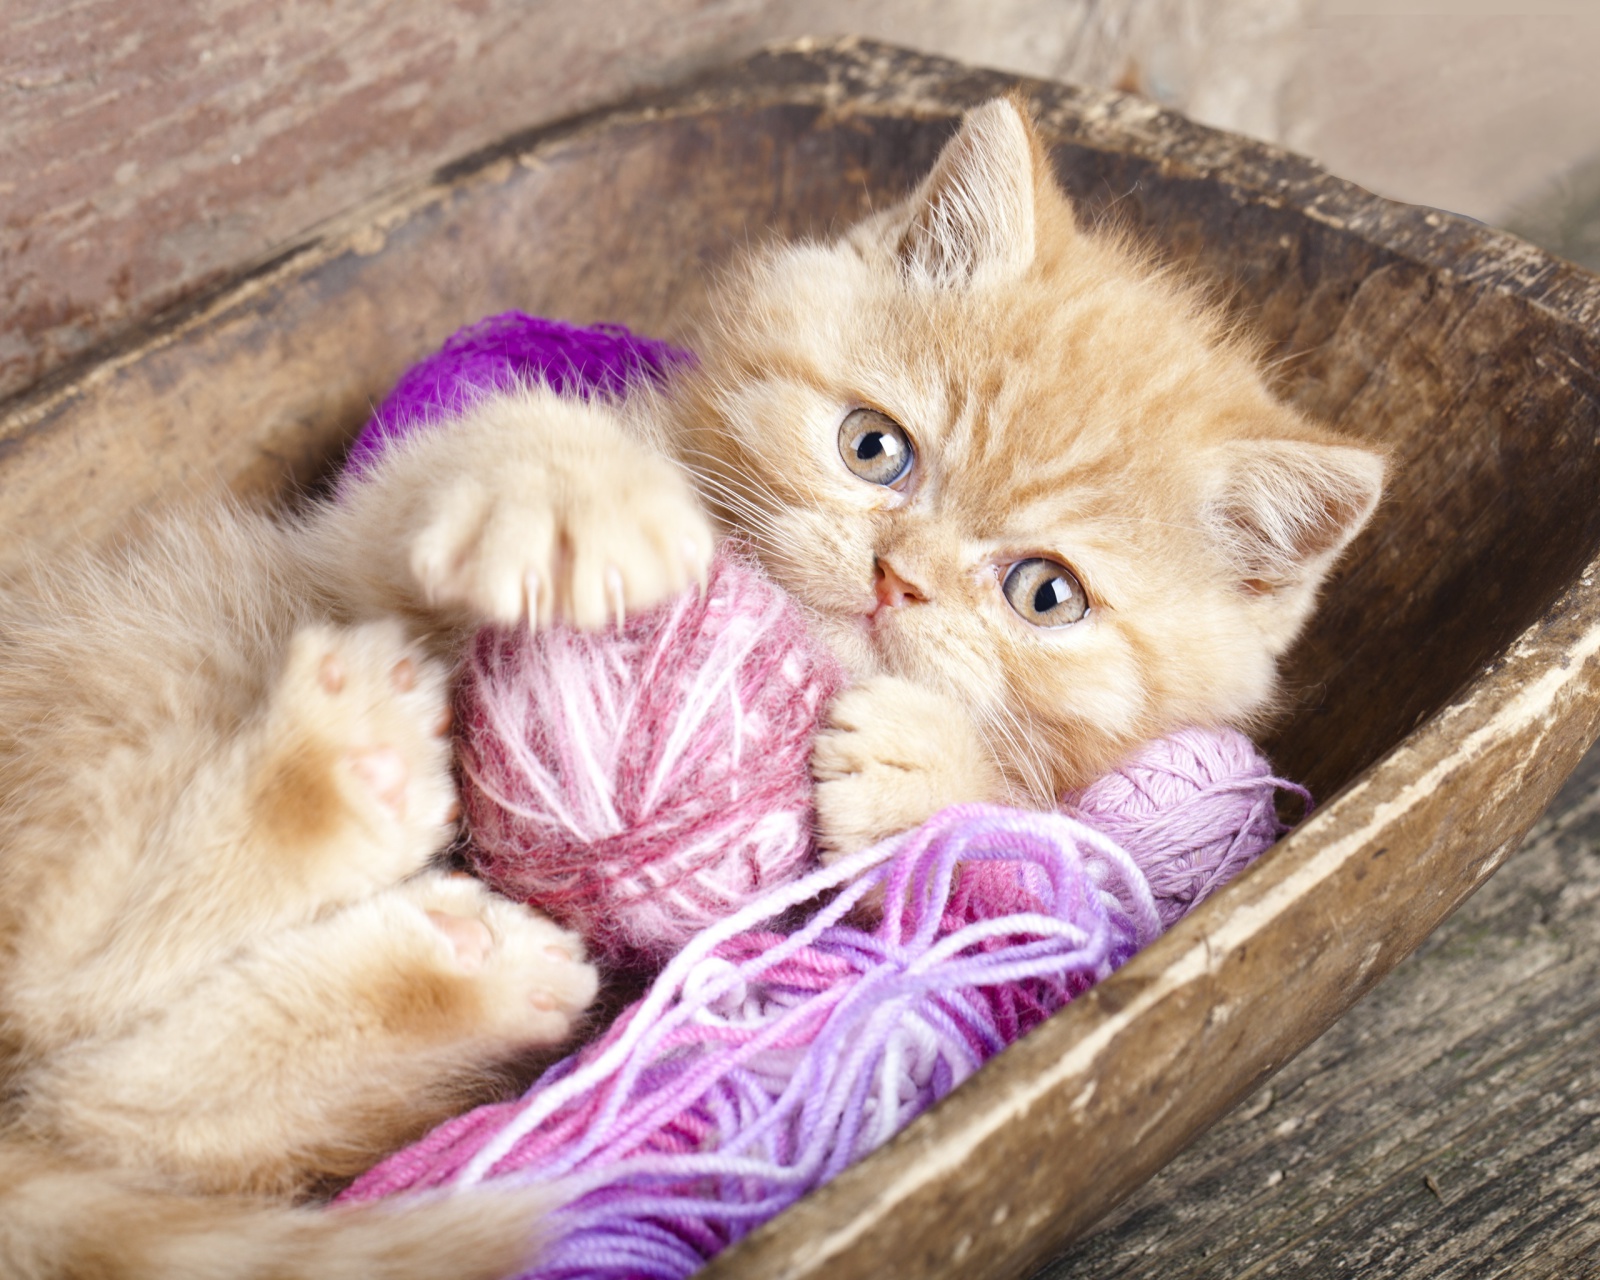 Cute Kitten Playing With A Ball Of Yarn screenshot #1 1600x1280